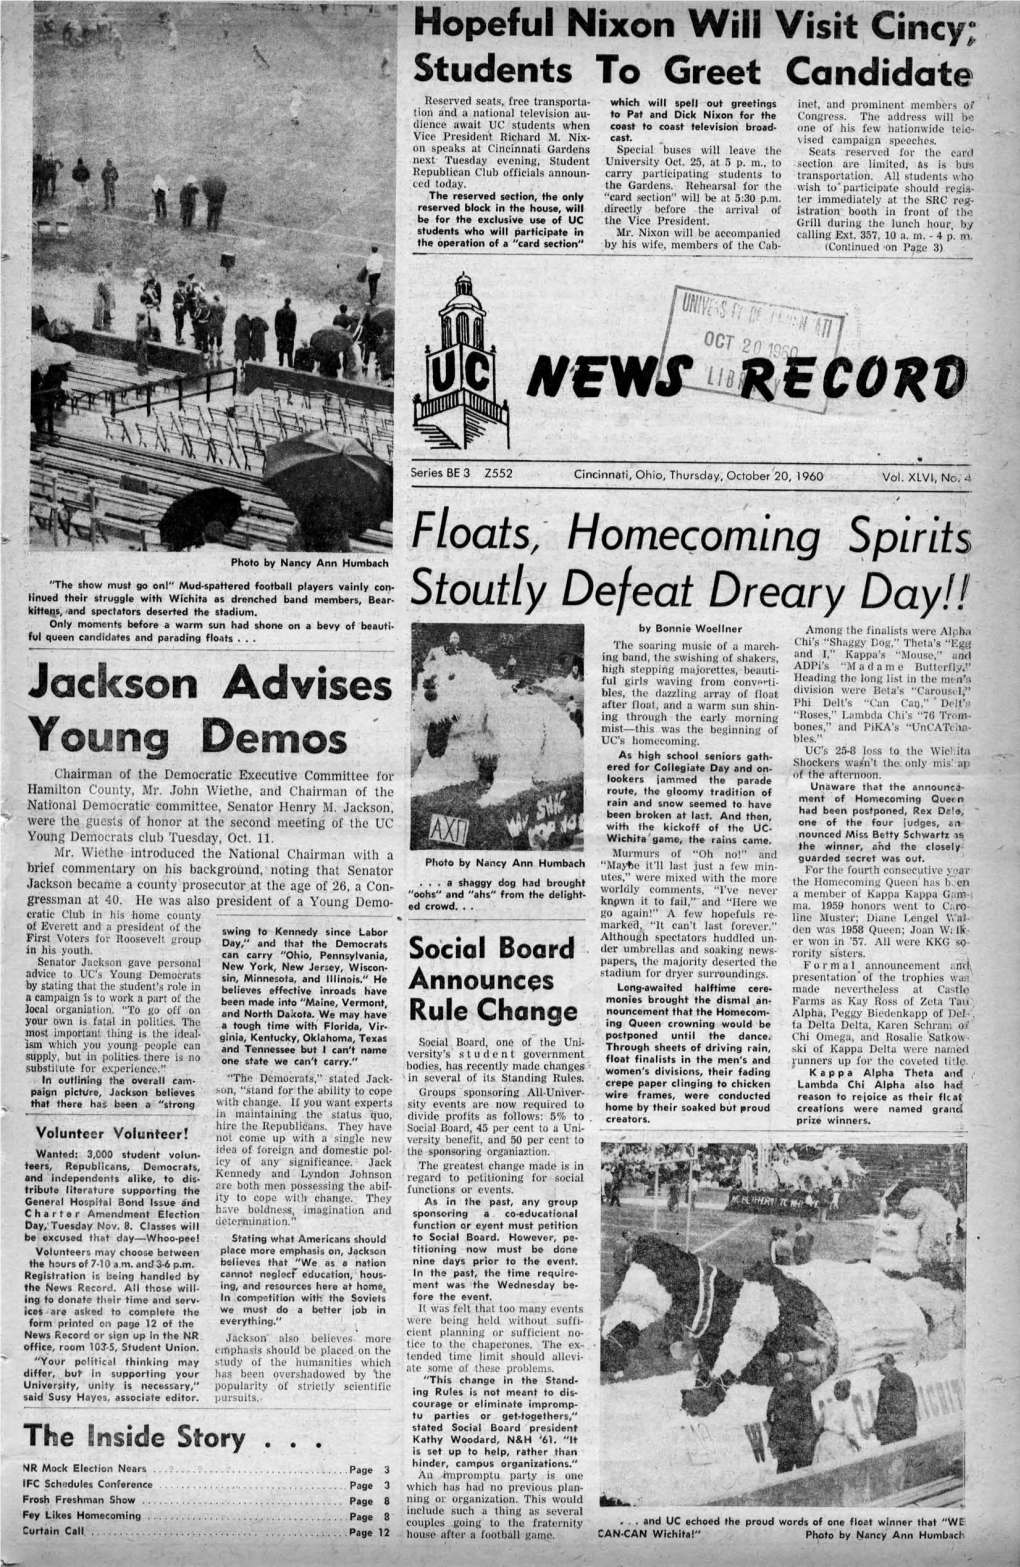 University of Cincinnati News Record. Thursday, October 20, 1960. Vol